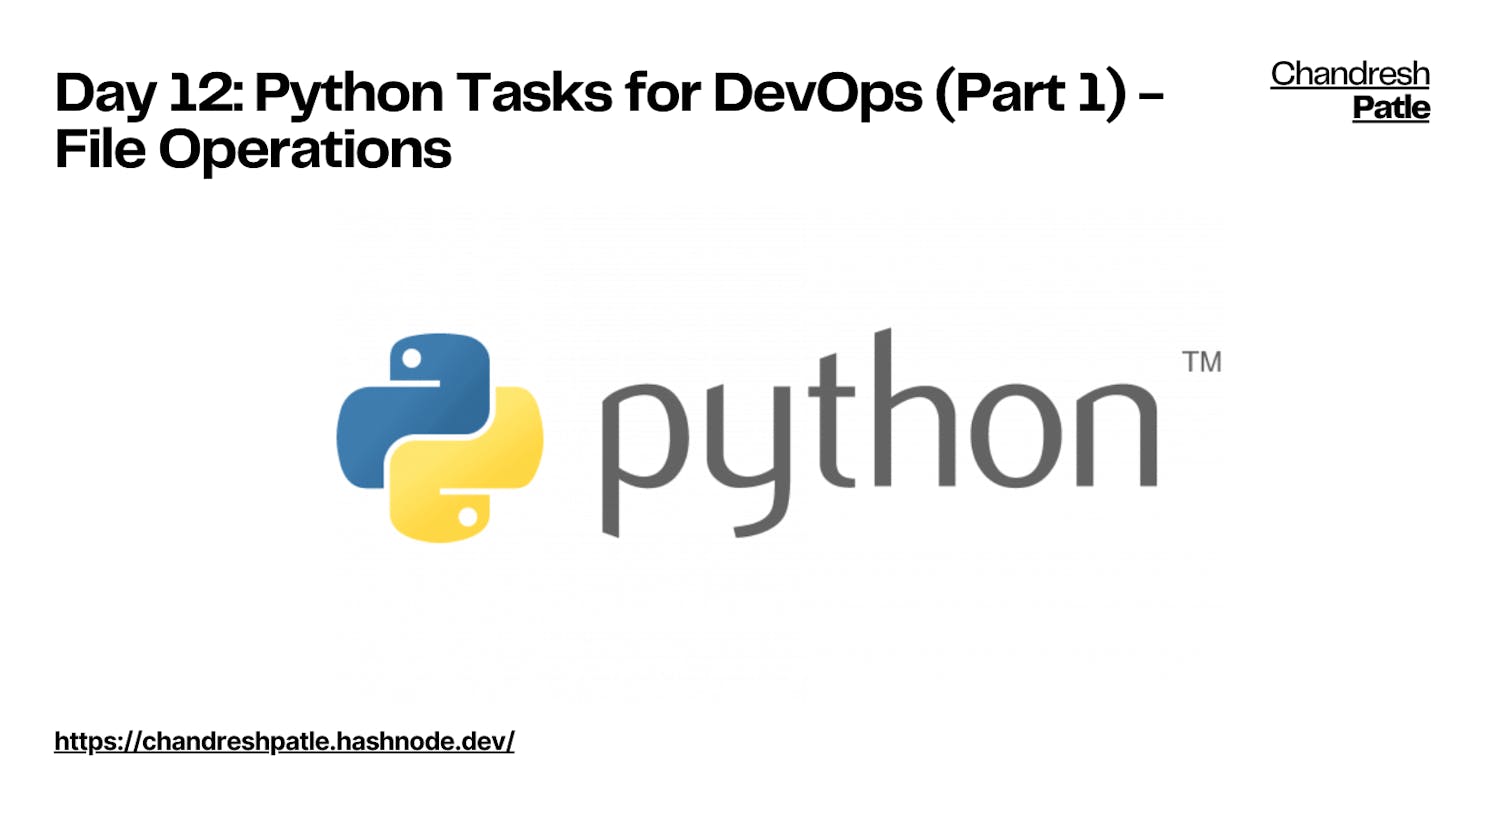 Day 12: Python Tasks for DevOps (Part 1) - File Operations